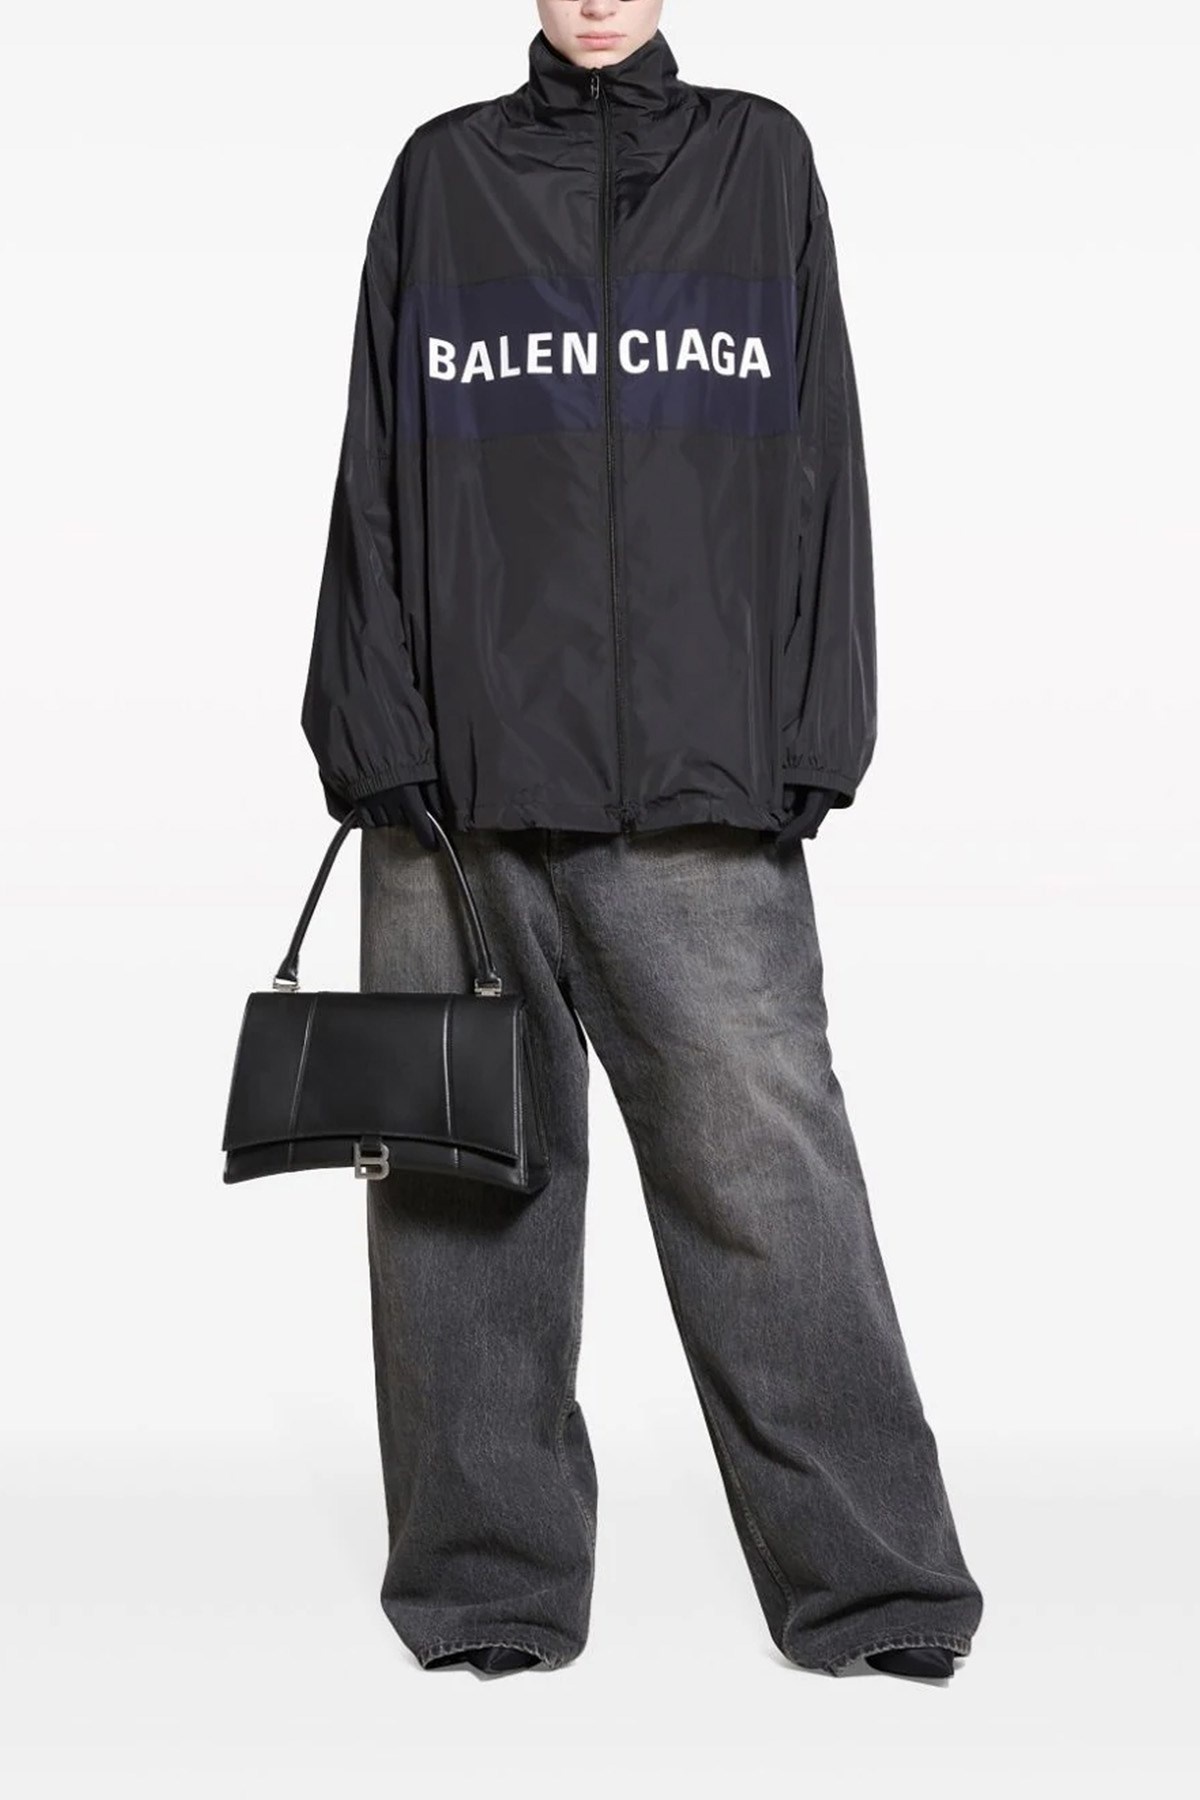 'Balenciaga' jacket - 2